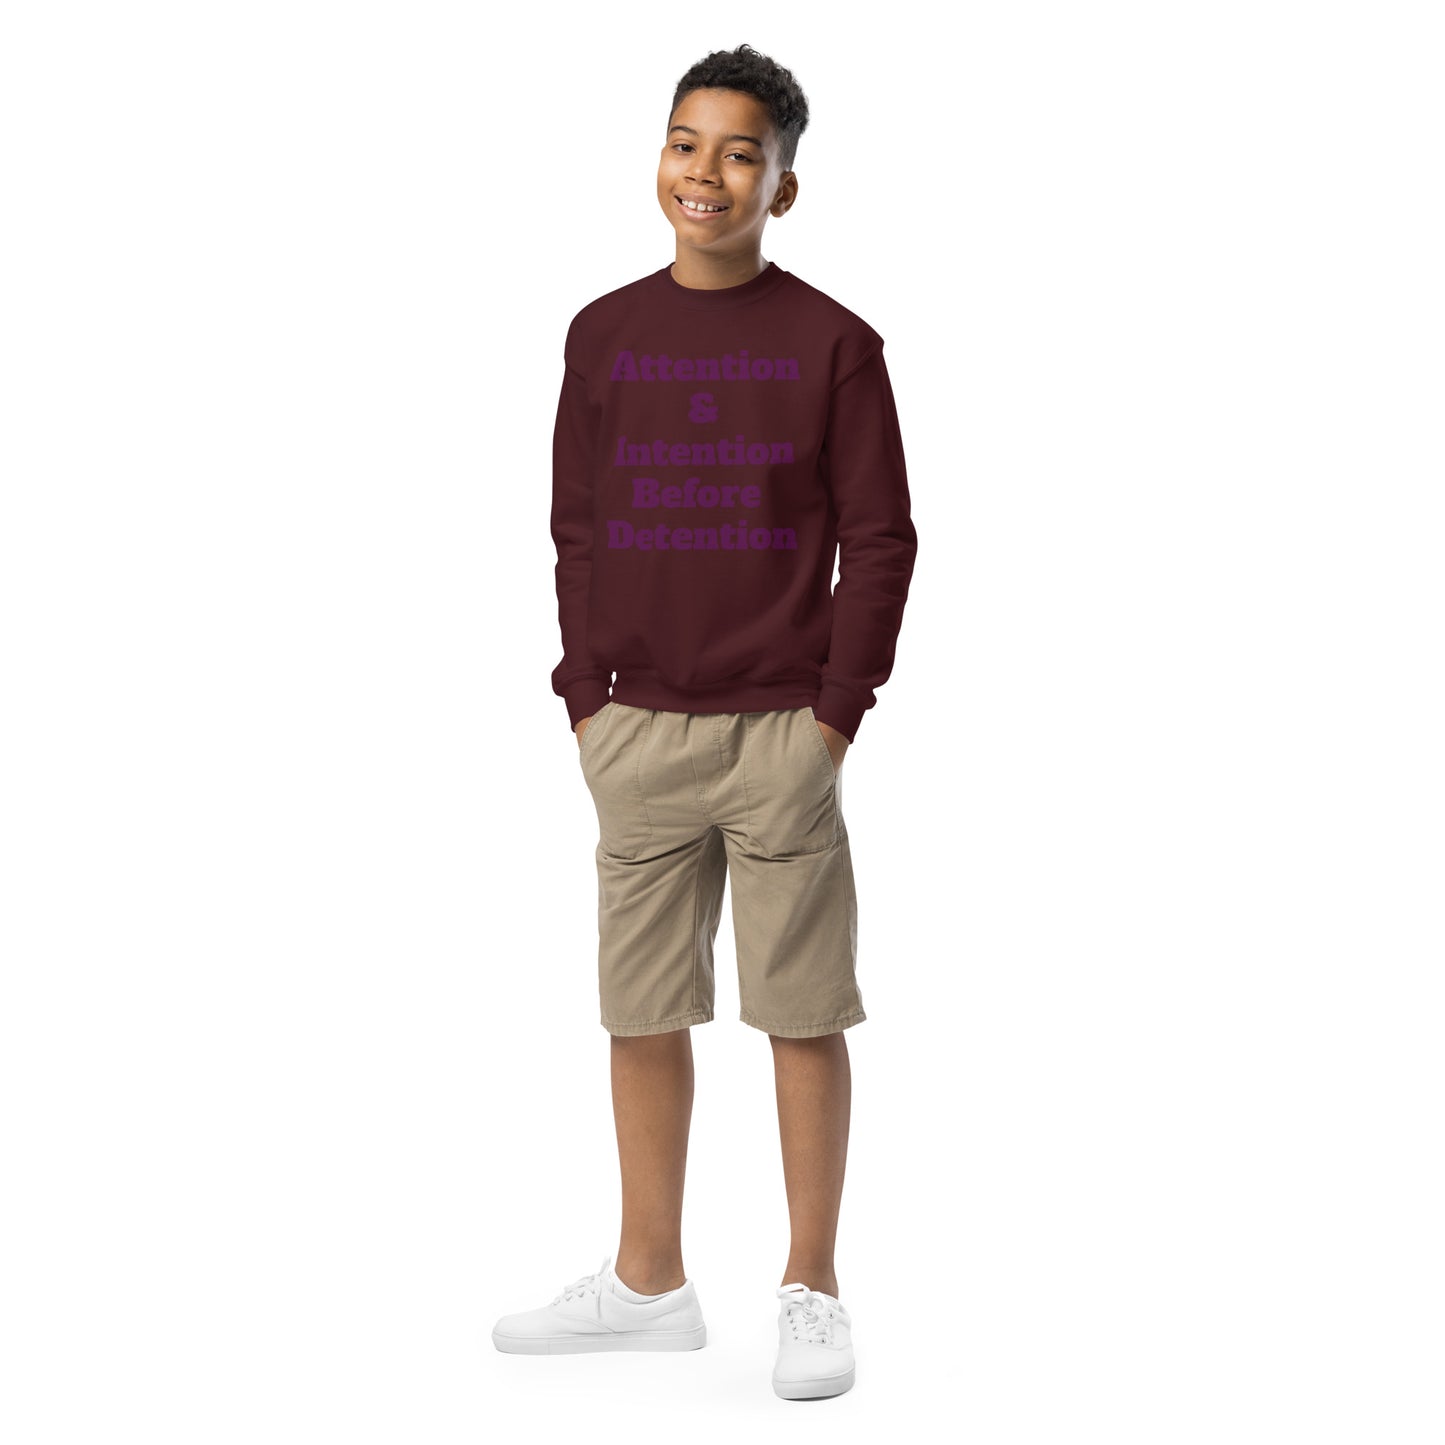 Youth crewneck sweatshirt